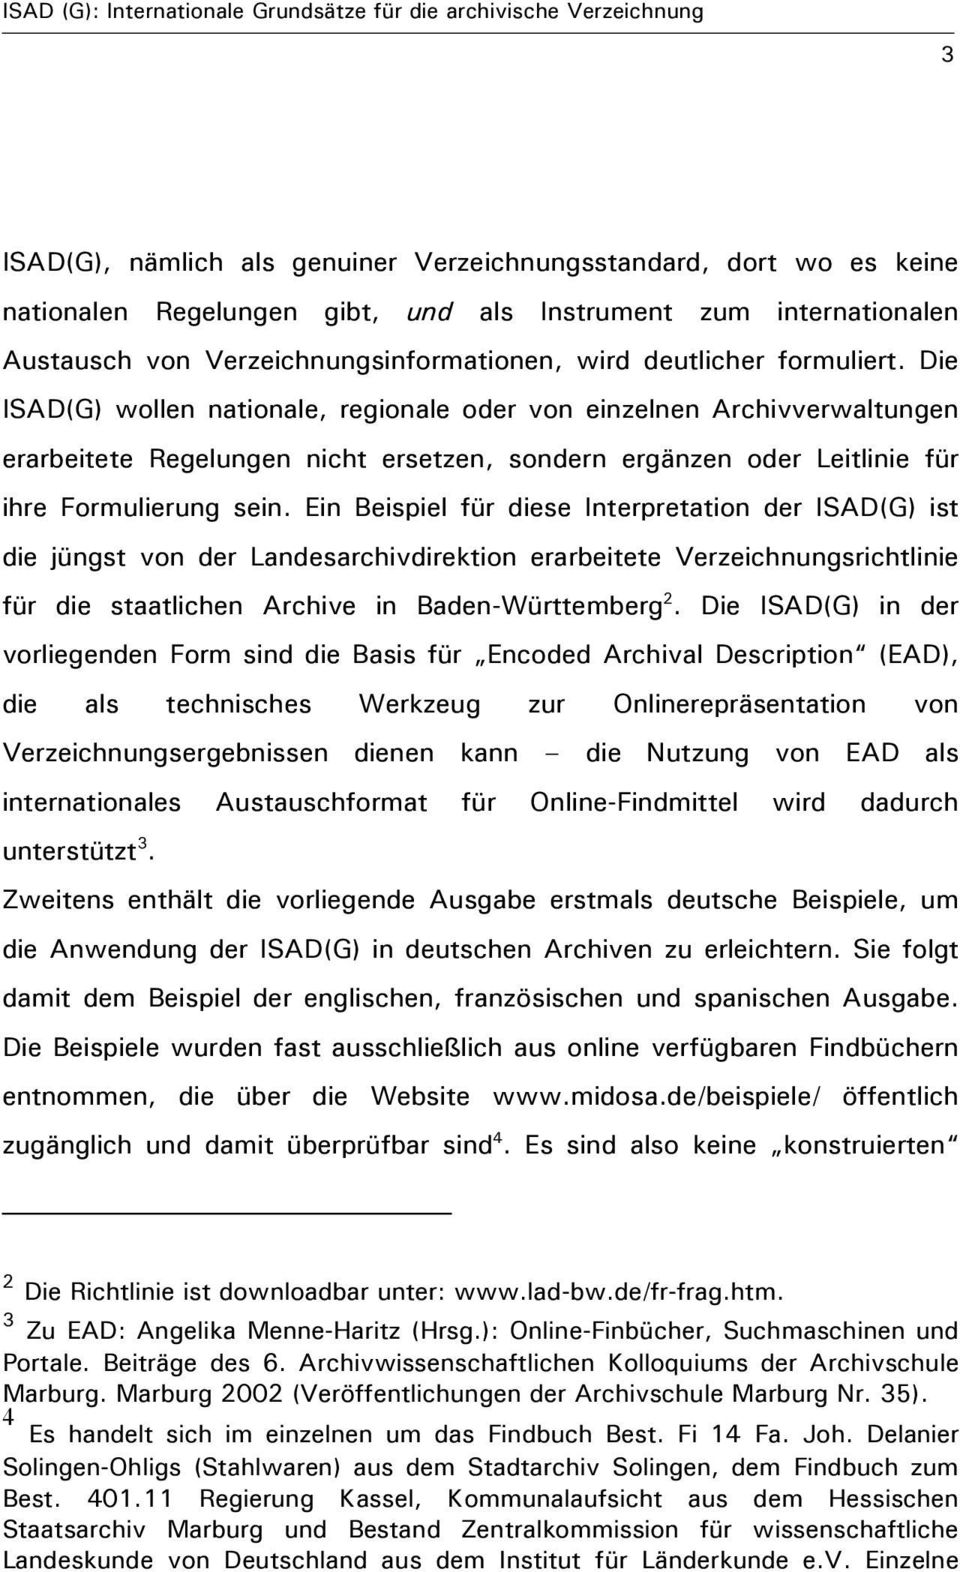 Ein Beispiel für diese Interpretation der ISAD(G) ist die jüngst von der Landesarchivdirektion erarbeitete Verzeichnungsrichtlinie für die staatlichen Archive in Baden-Württemberg 2.